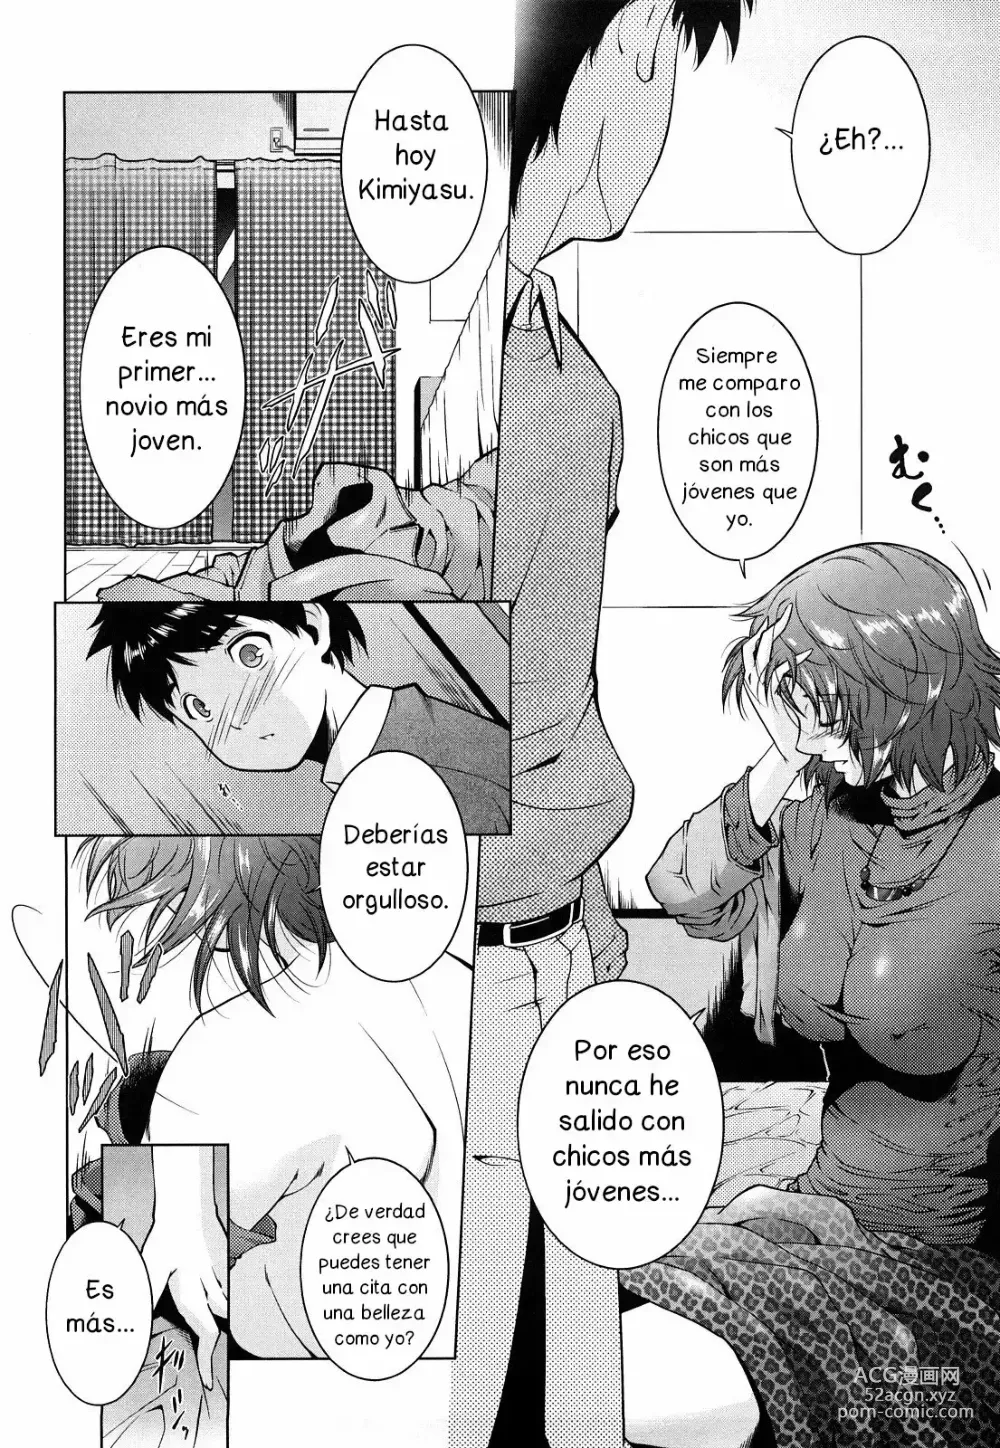 Page 6 of manga Hasta que la Magia se Acabe